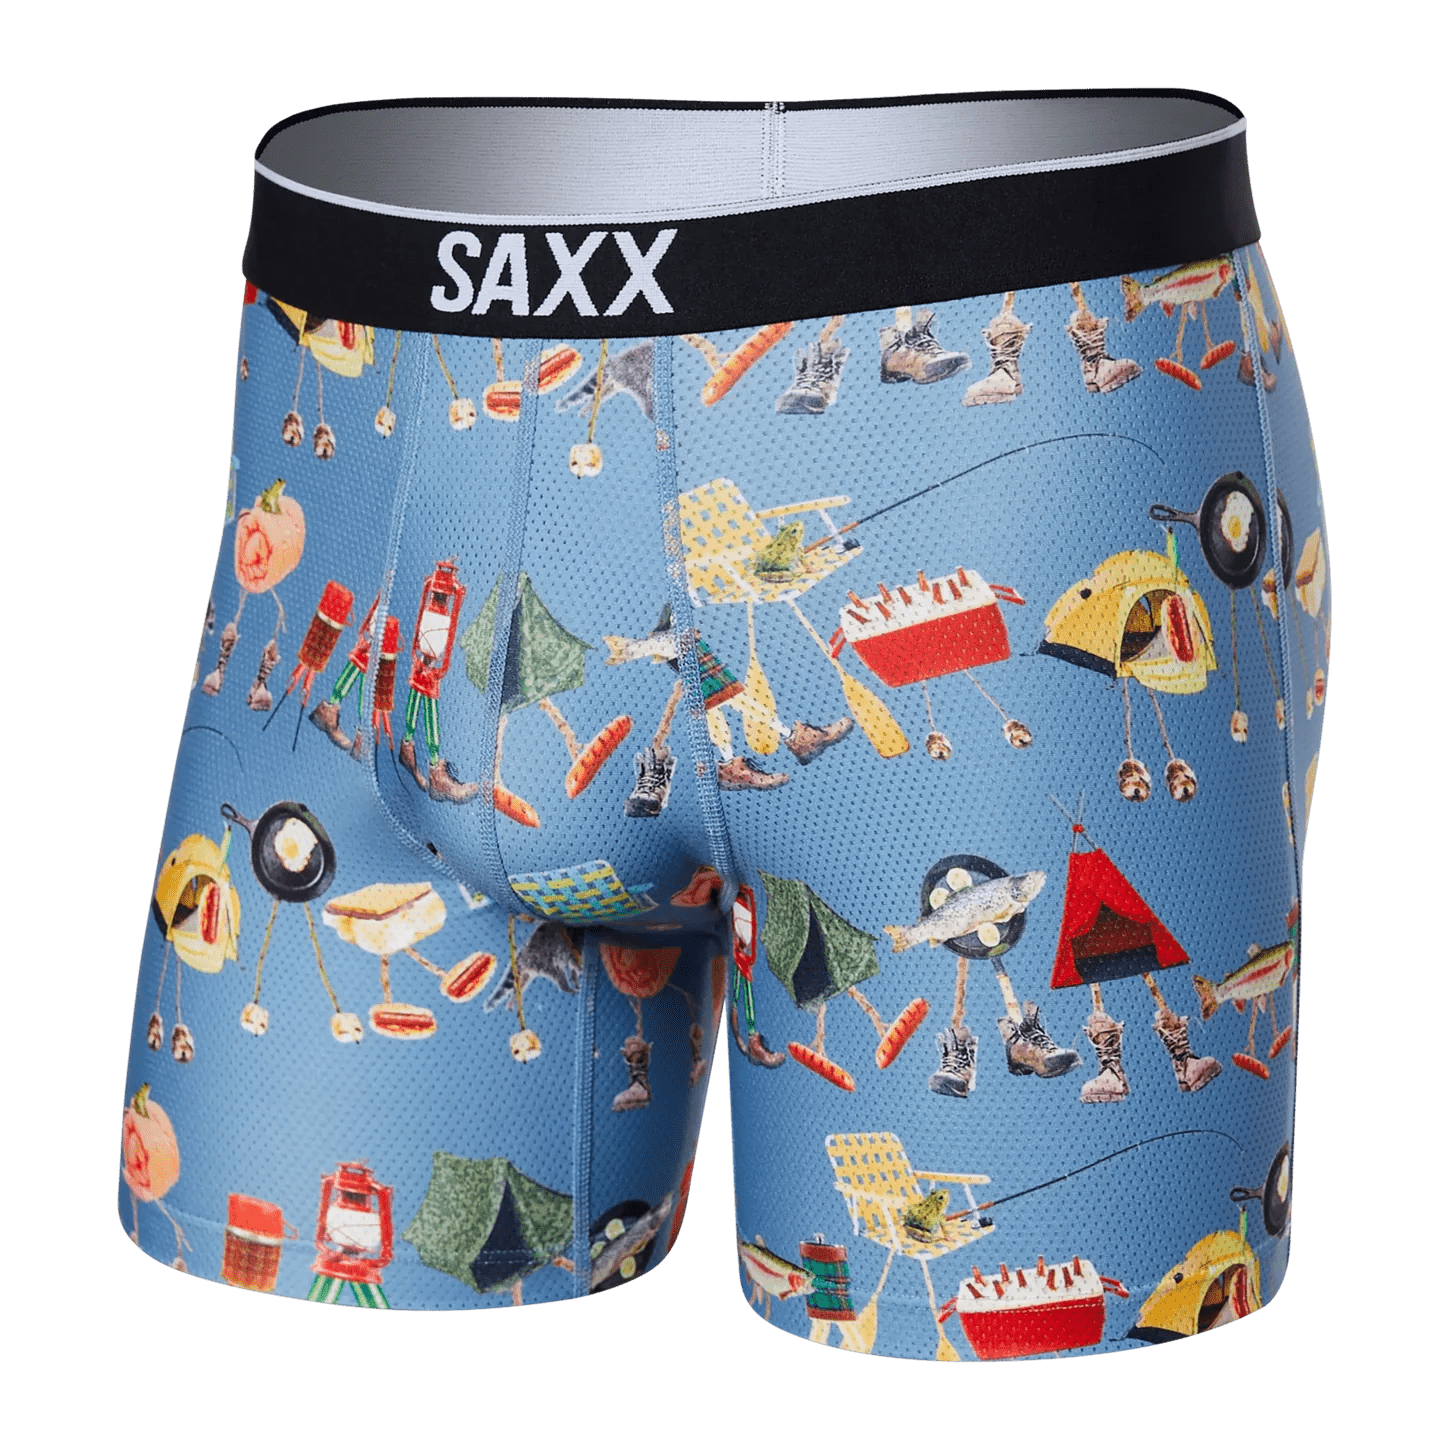 The Brief - SAXX Blog  The best sport underwear for men – SAXX